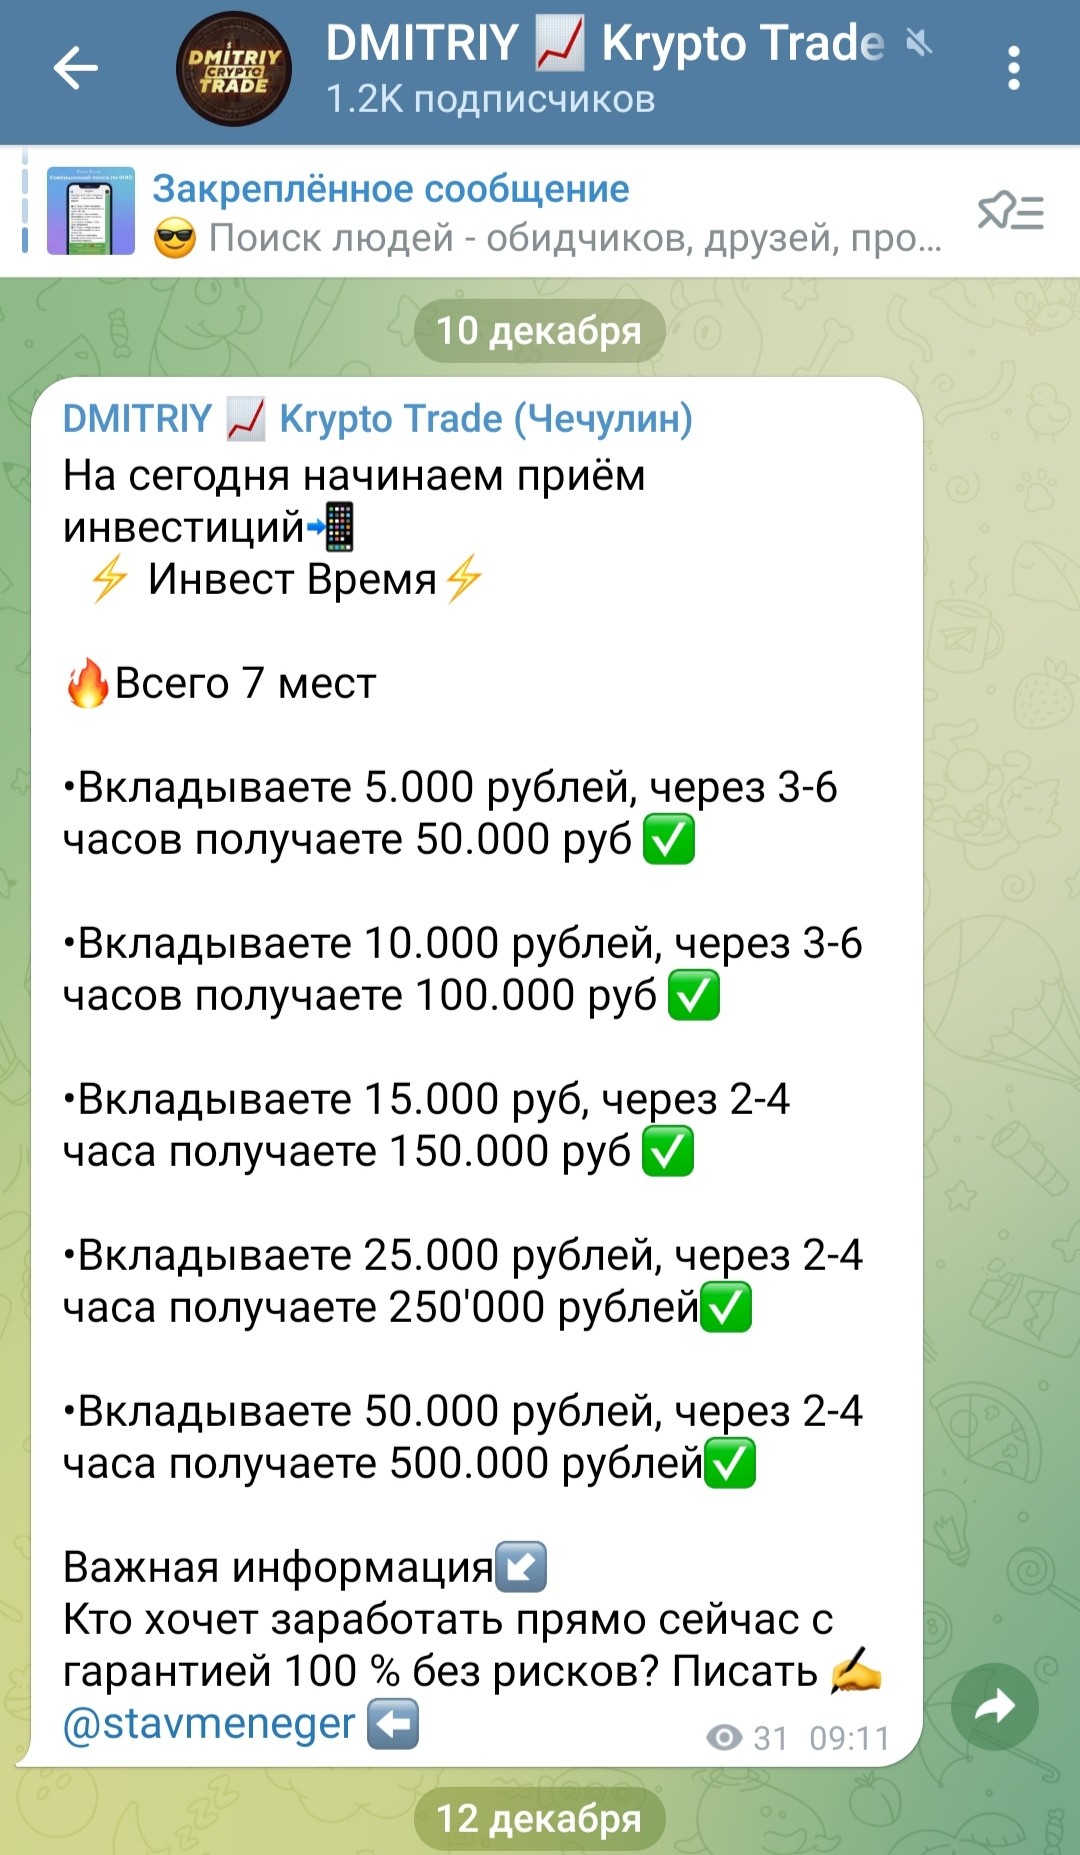 Дмитрий Крипто трейд телеграм